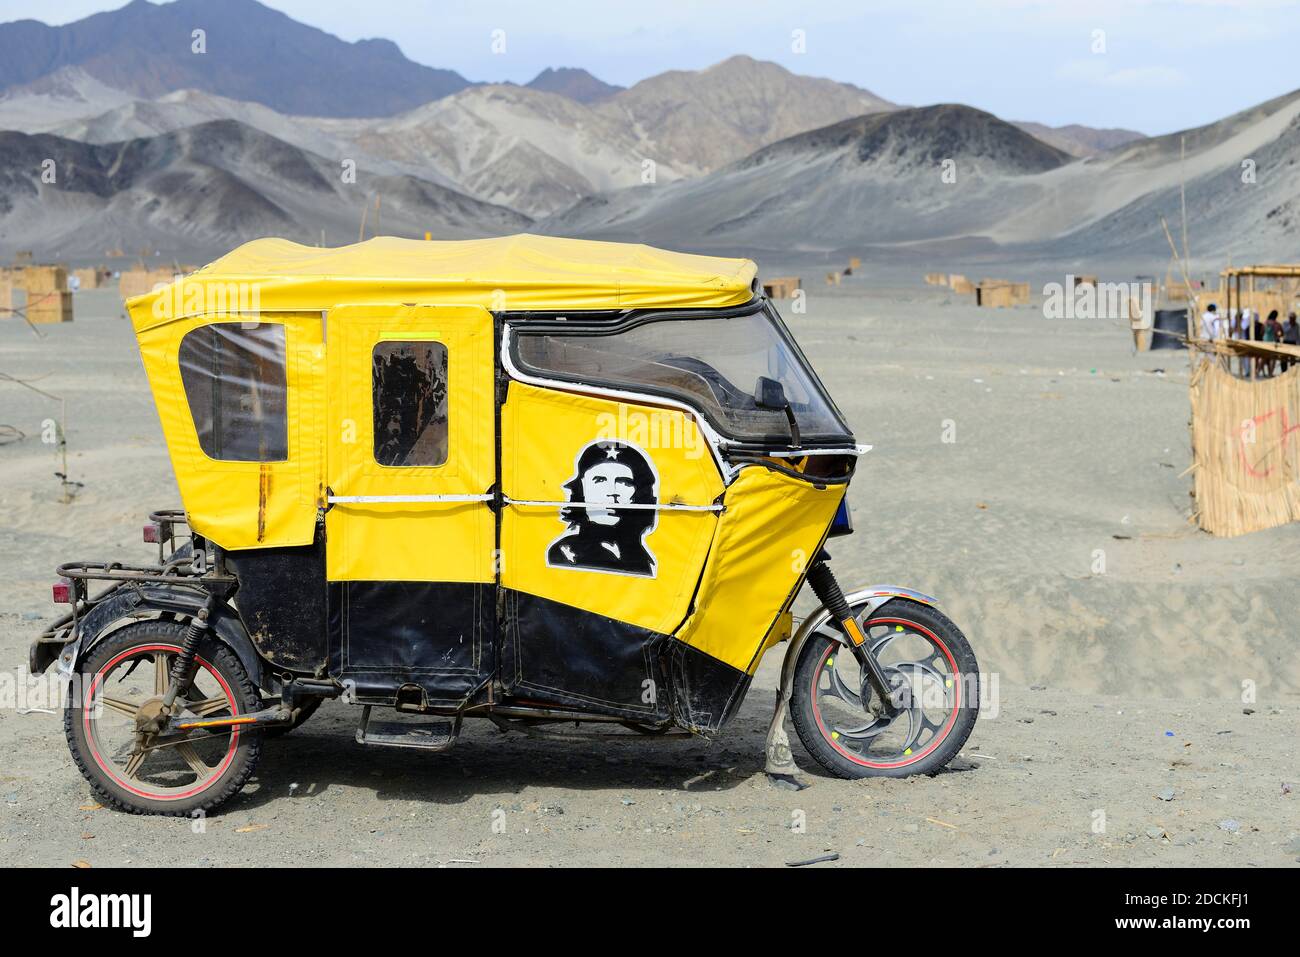 Moto taxi, tuktuk, motorikscha avec image de Che Guevara, près de Chimbote, région d'Ancash, Pérou Banque D'Images